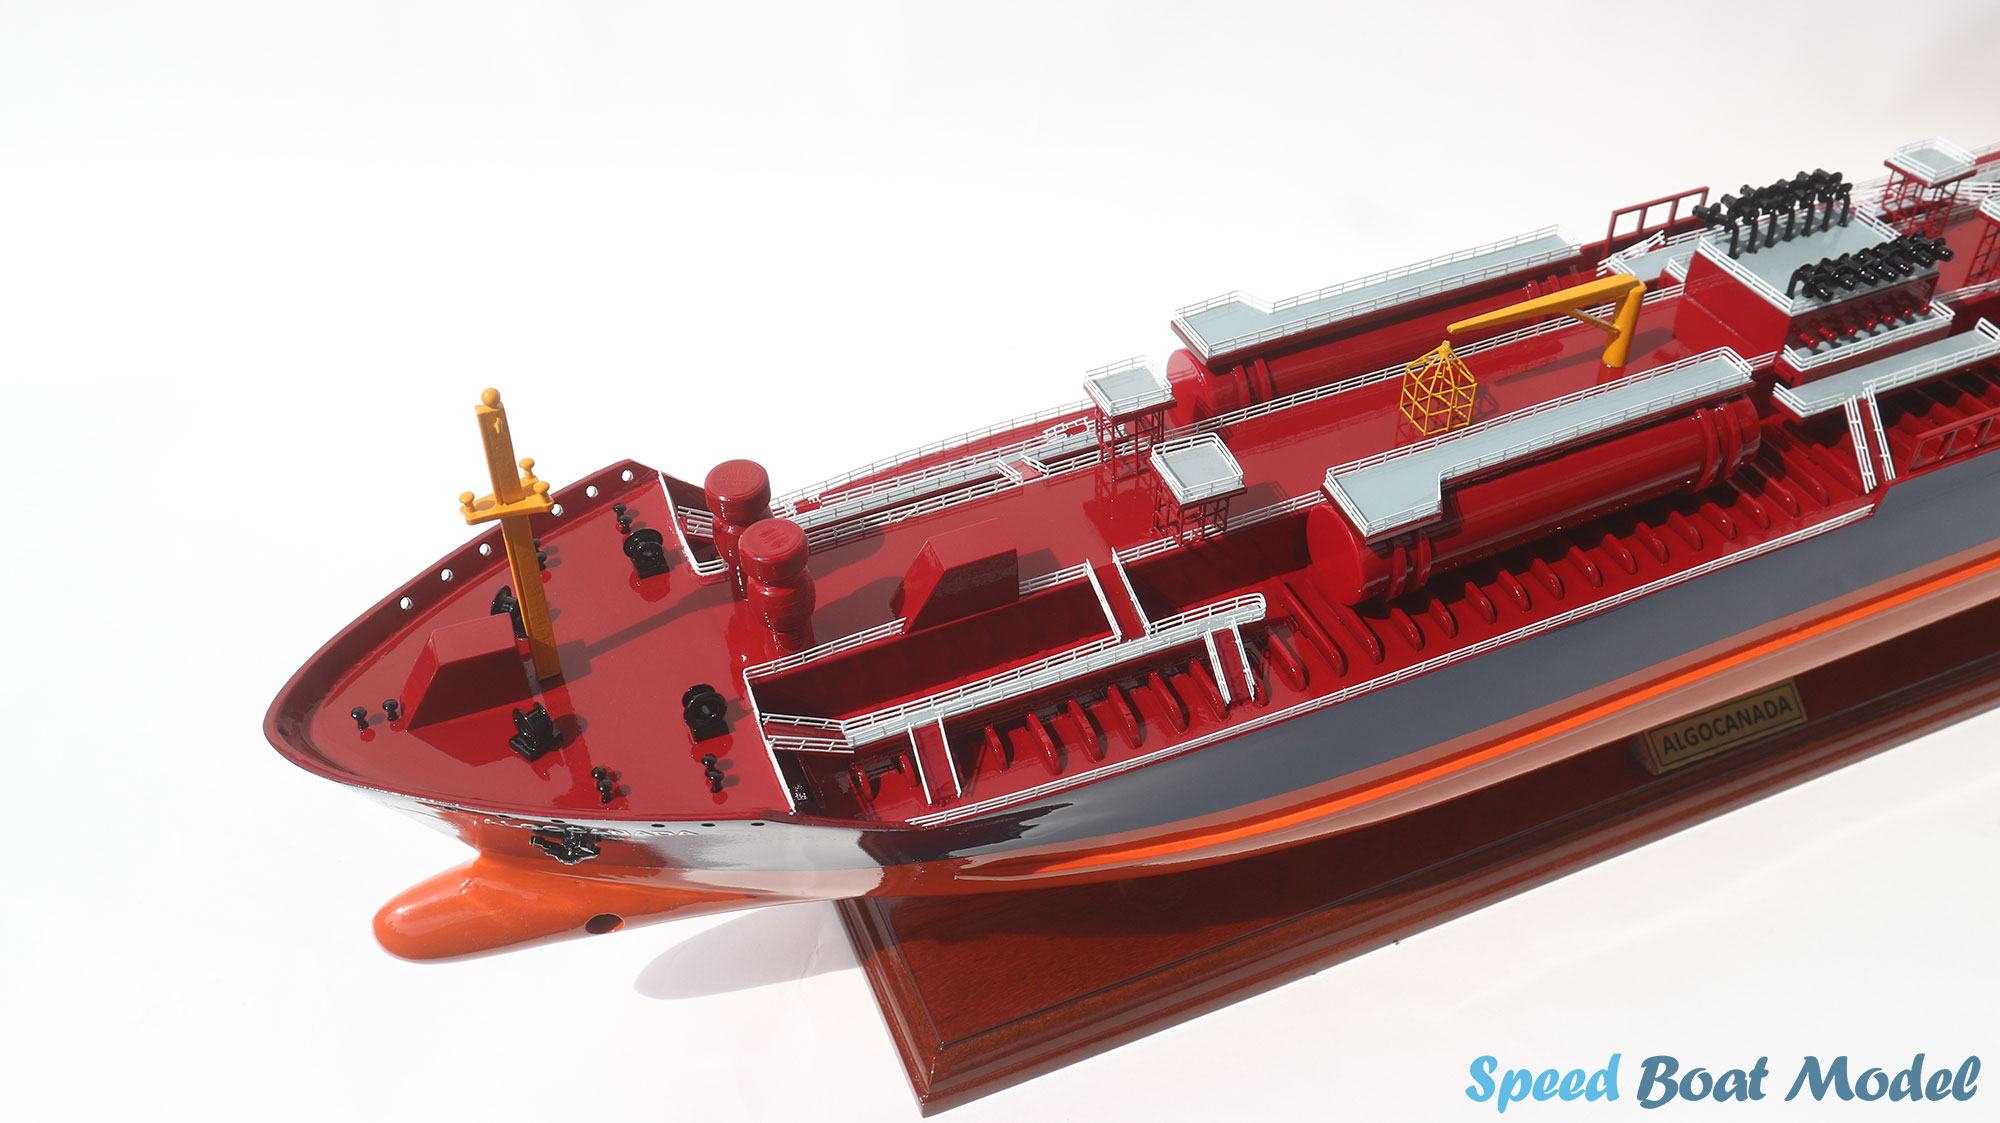 Algocanada Fishing Boat Model 33.8